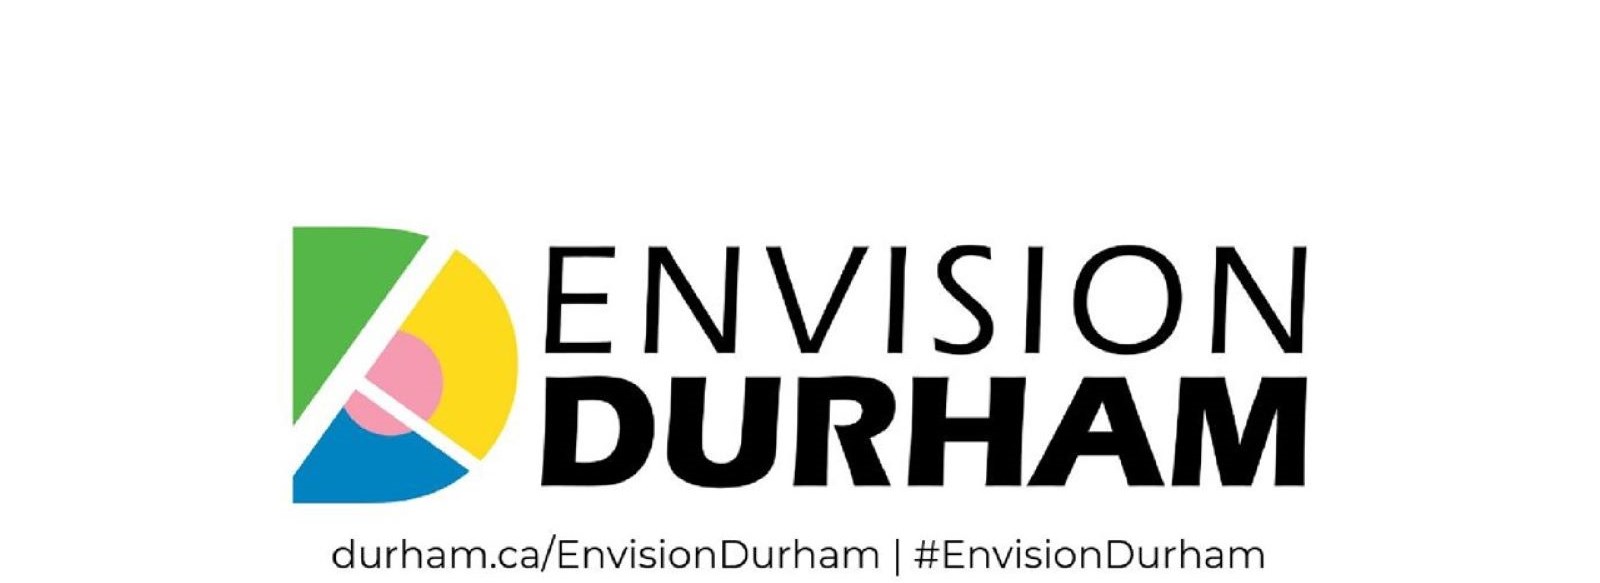 Envision Durham